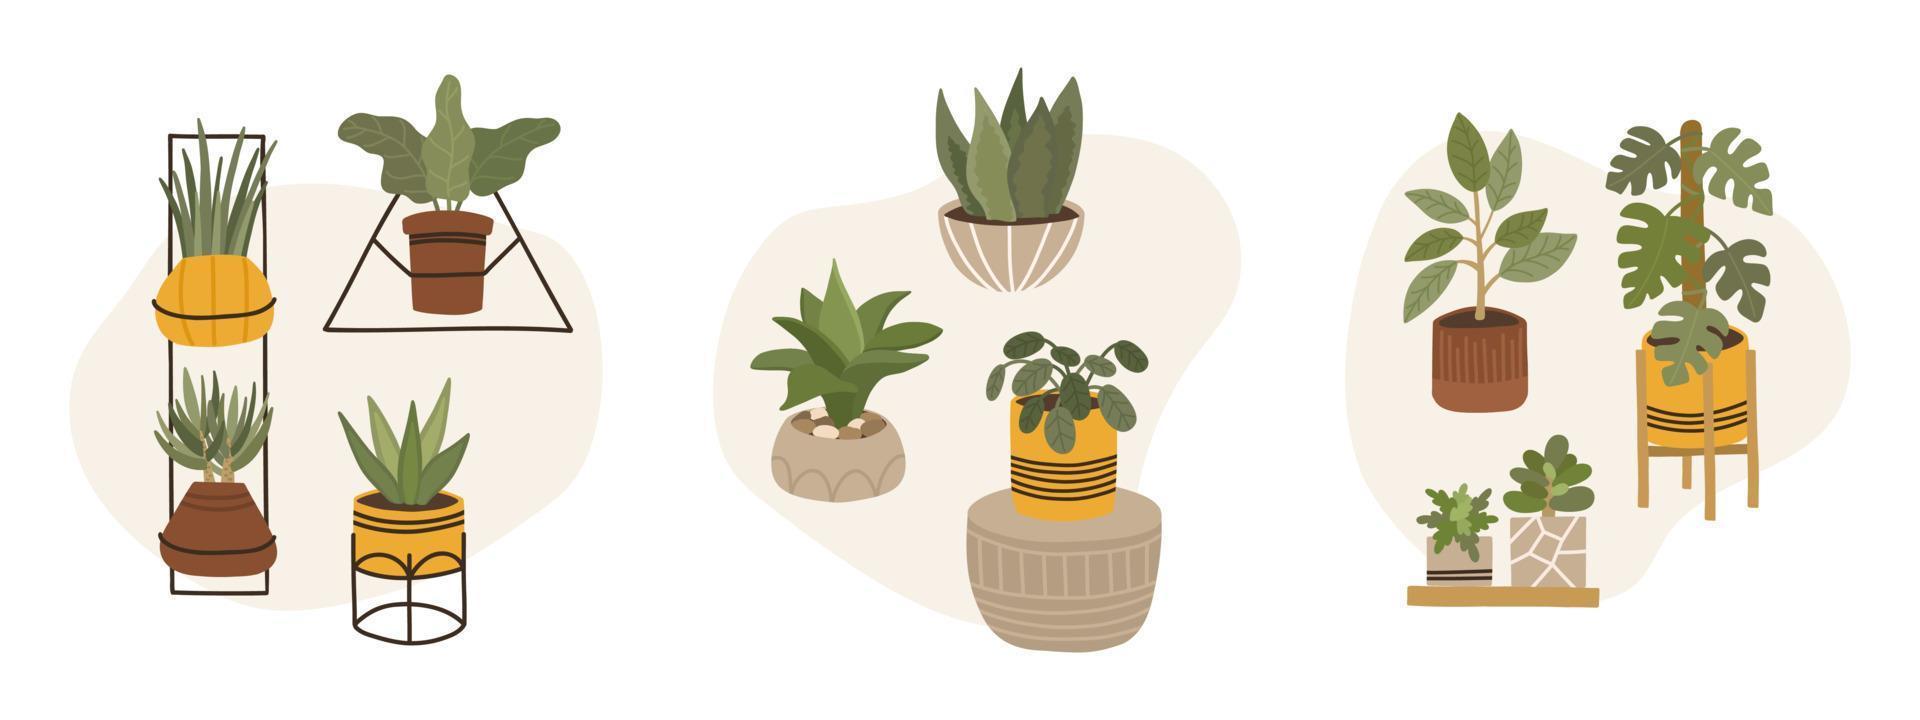 Reihe trendiger skandinavischer Boho-Topfpflanzen für zu Hause. gemütlicher Hausgarten im Hygge-Stil eingerichtet. verschiedene Indoor-Zimmerpflanzen isoliert auf weißem Hintergrund. vektor